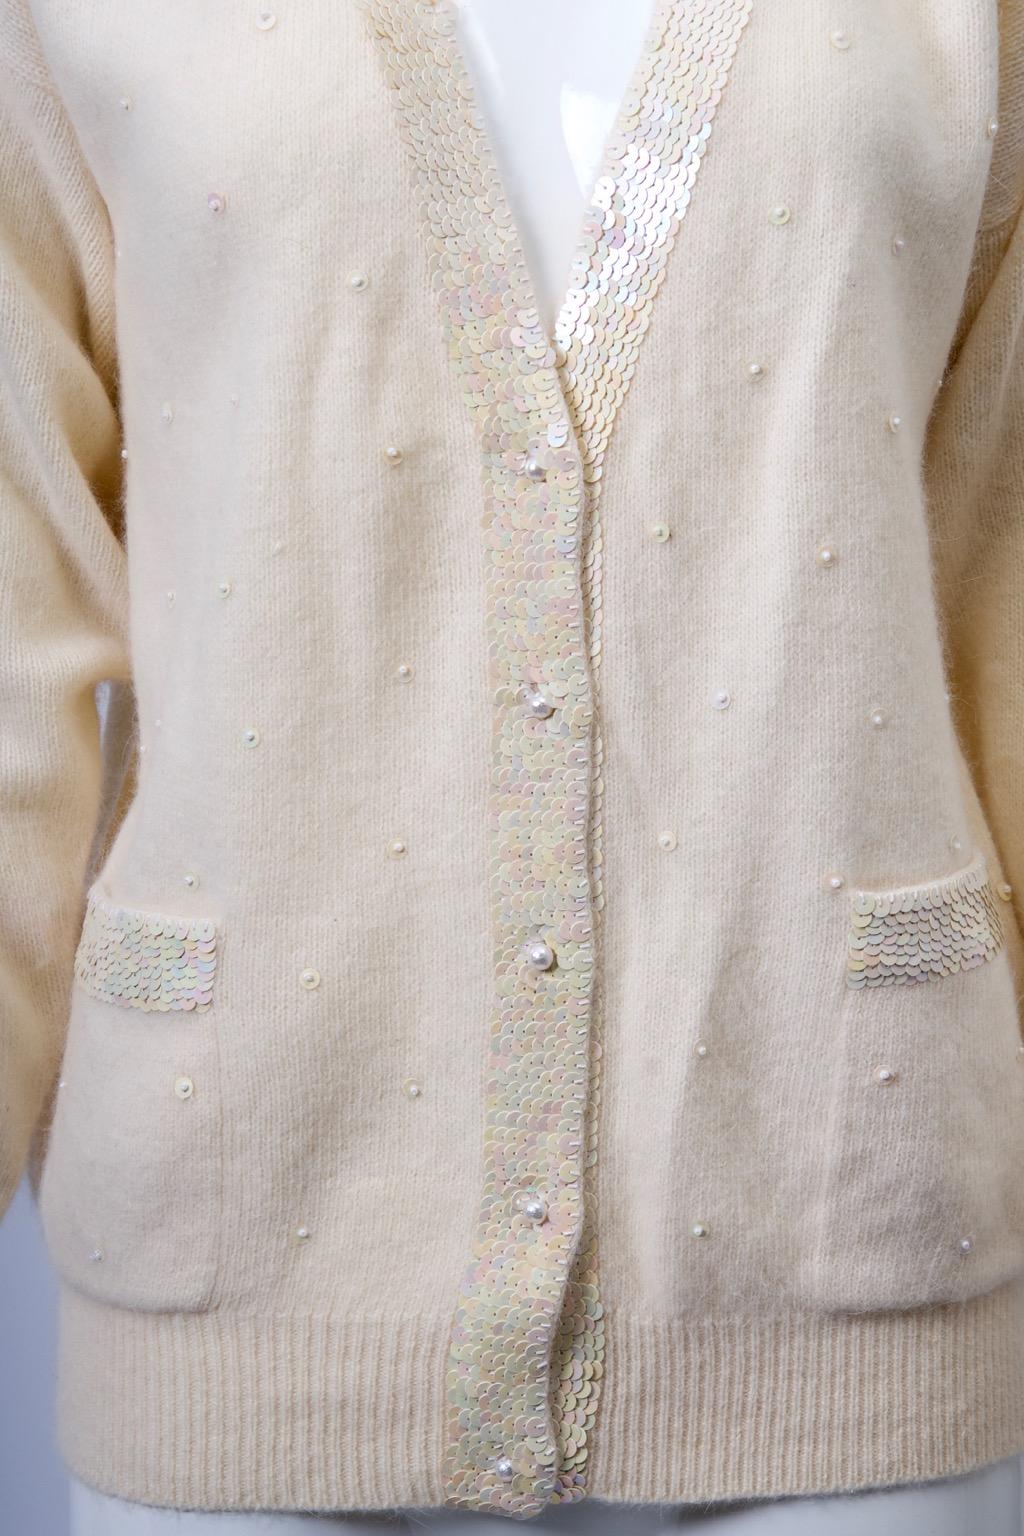 Cardigan à col en V en laine/angora mélangée, avec une bande de paillettes blanches irisées sur les bords du devant et sur les poches plaquées. Le devant du pull est également orné de perles éparses et fermé par des boutons en perles. Manches raglan